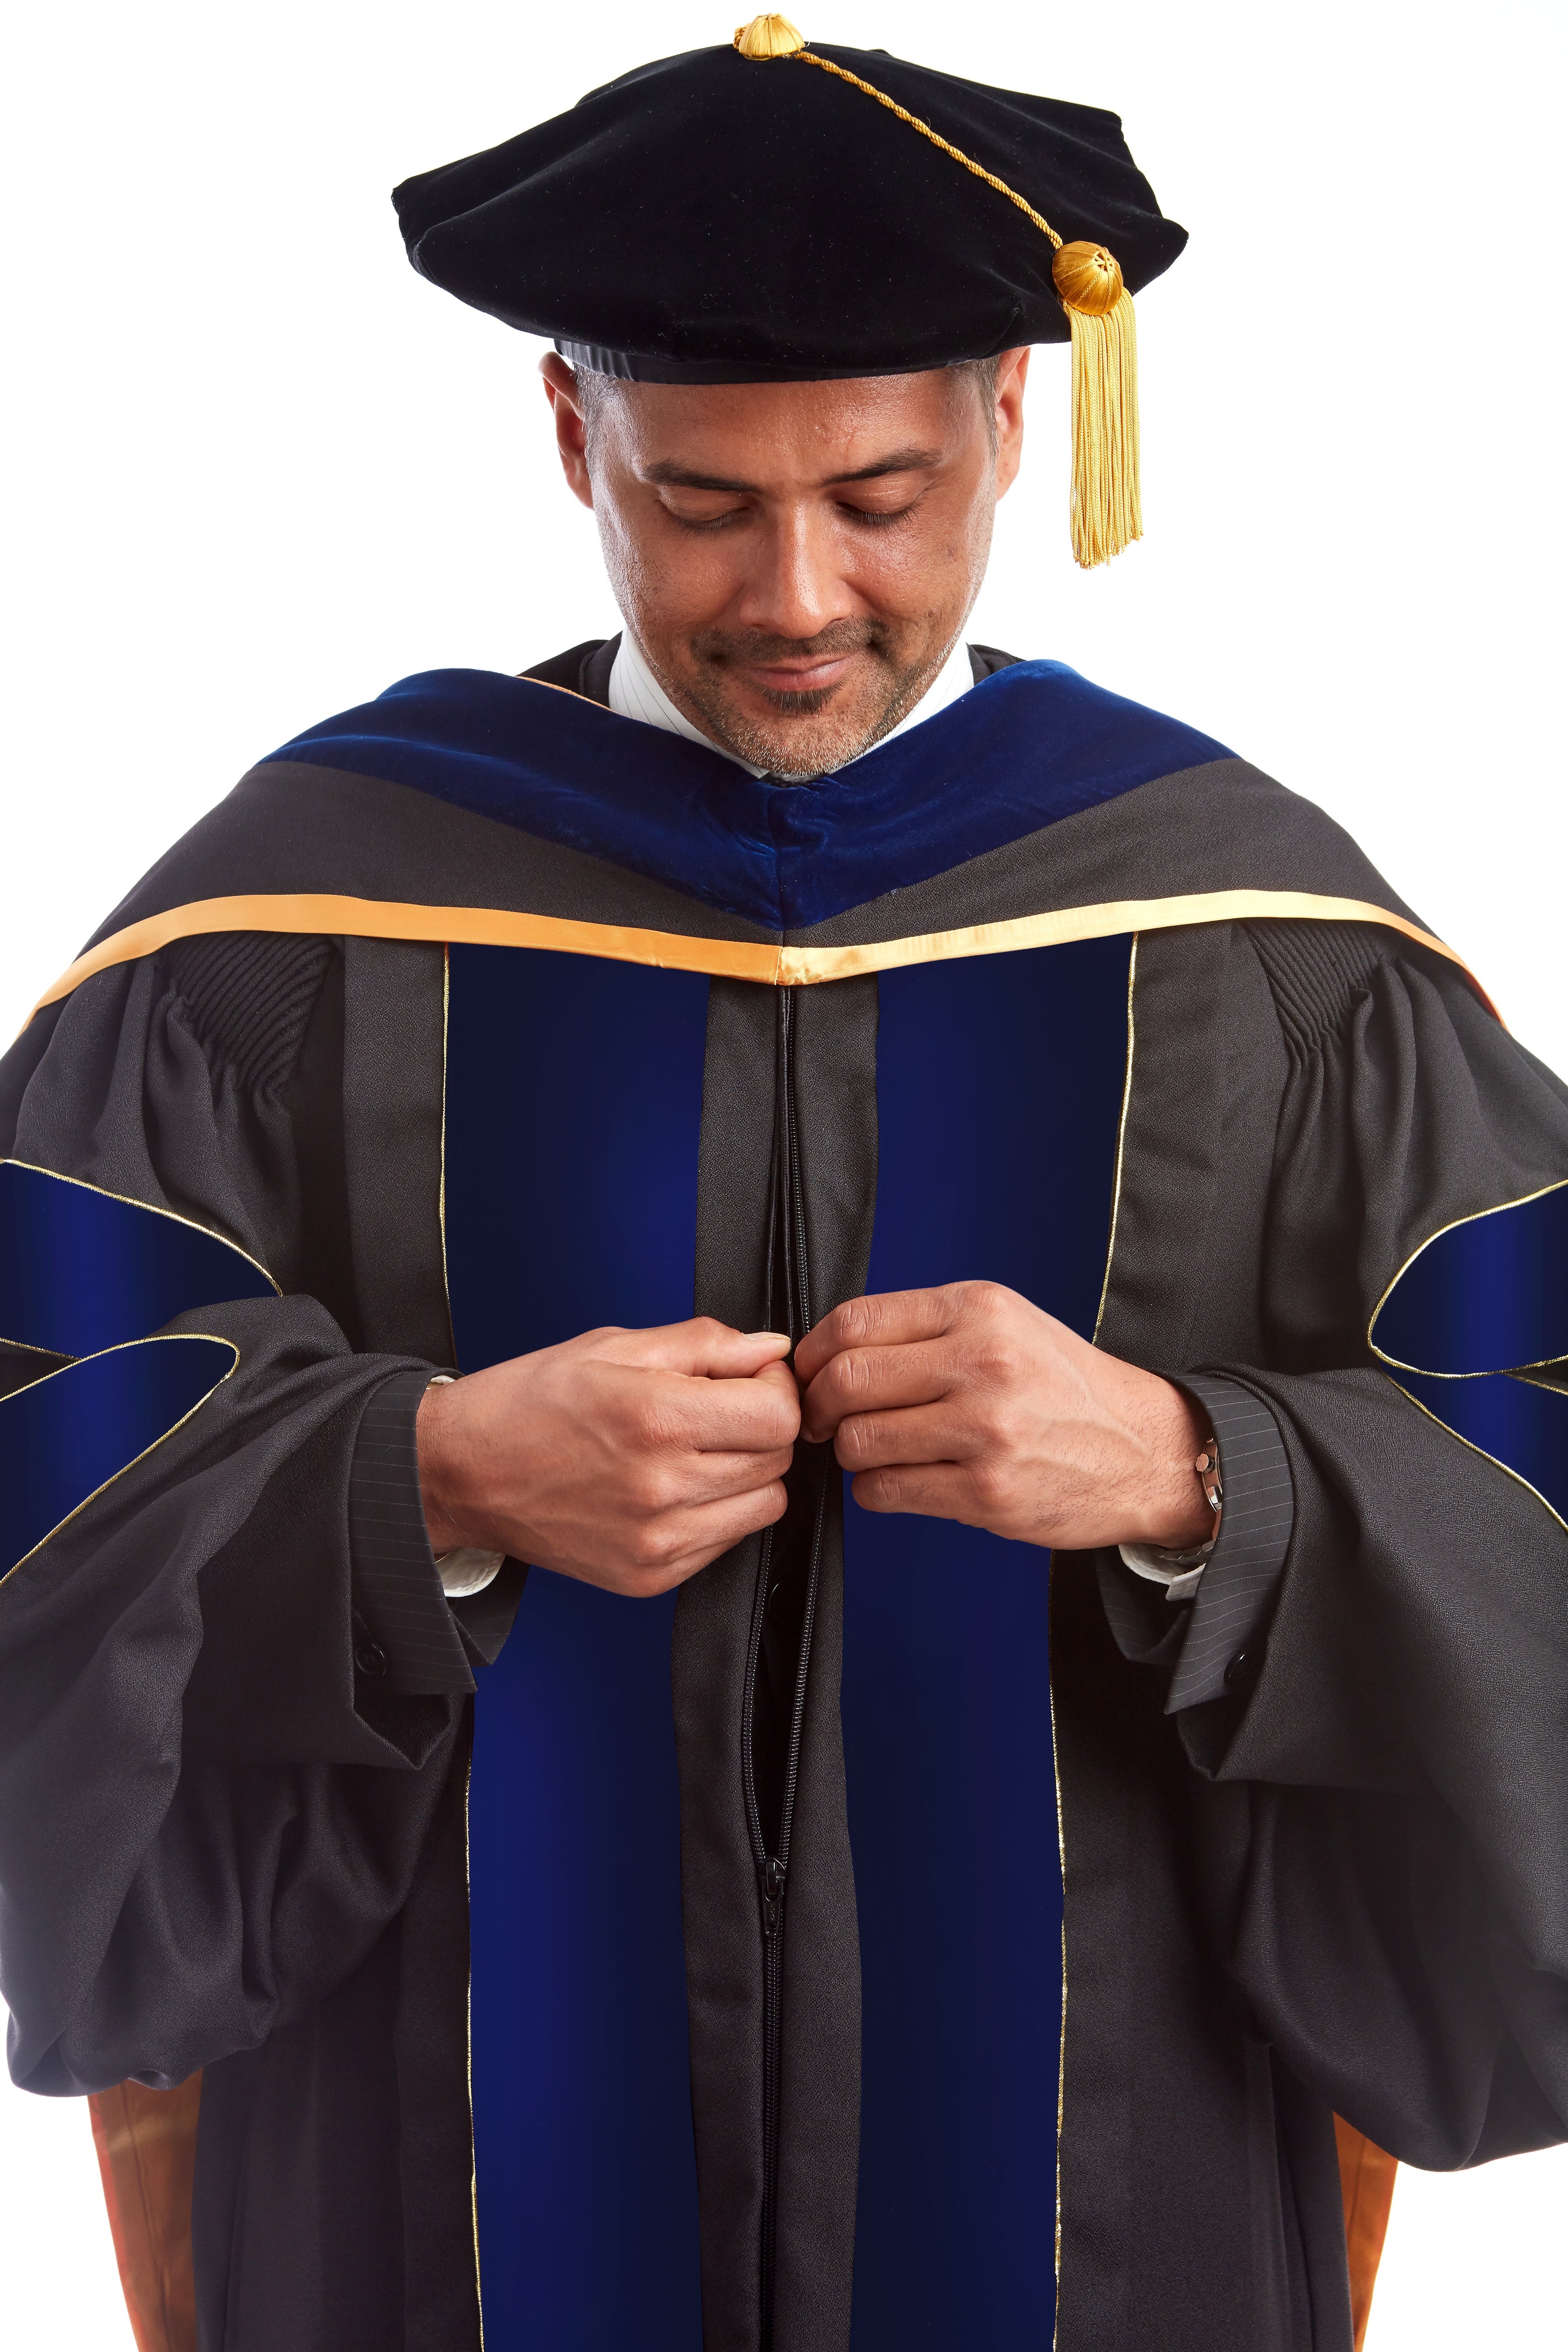 Premium PhD Regalia Rental